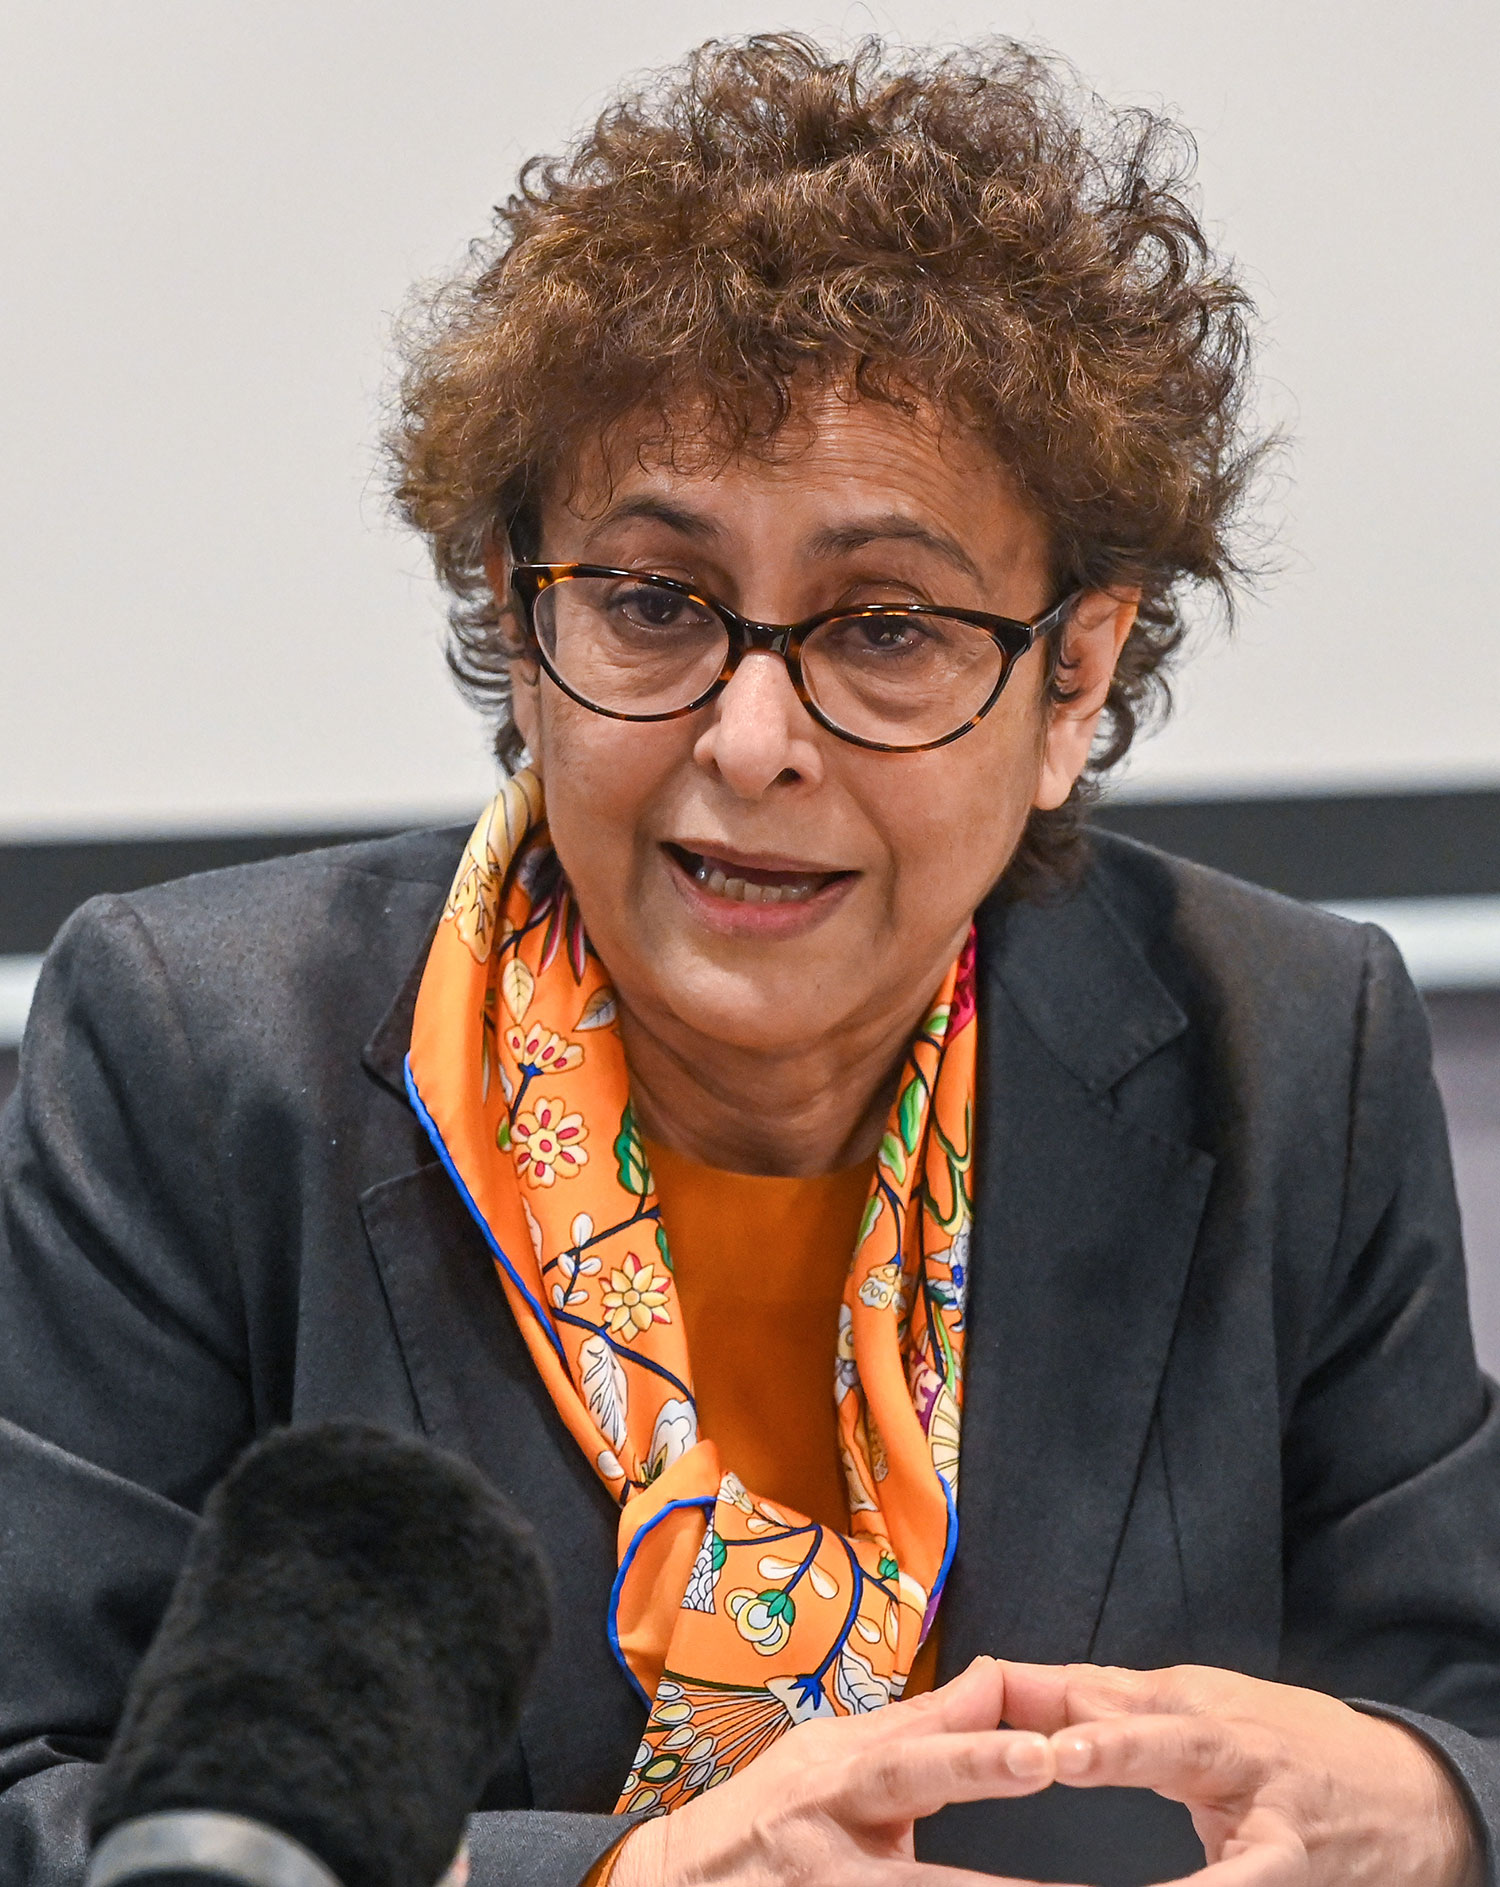 Mme Irene KHAN, rapporteuse spéciale des Nations unies sur la liberté d’opinion et d’expression.